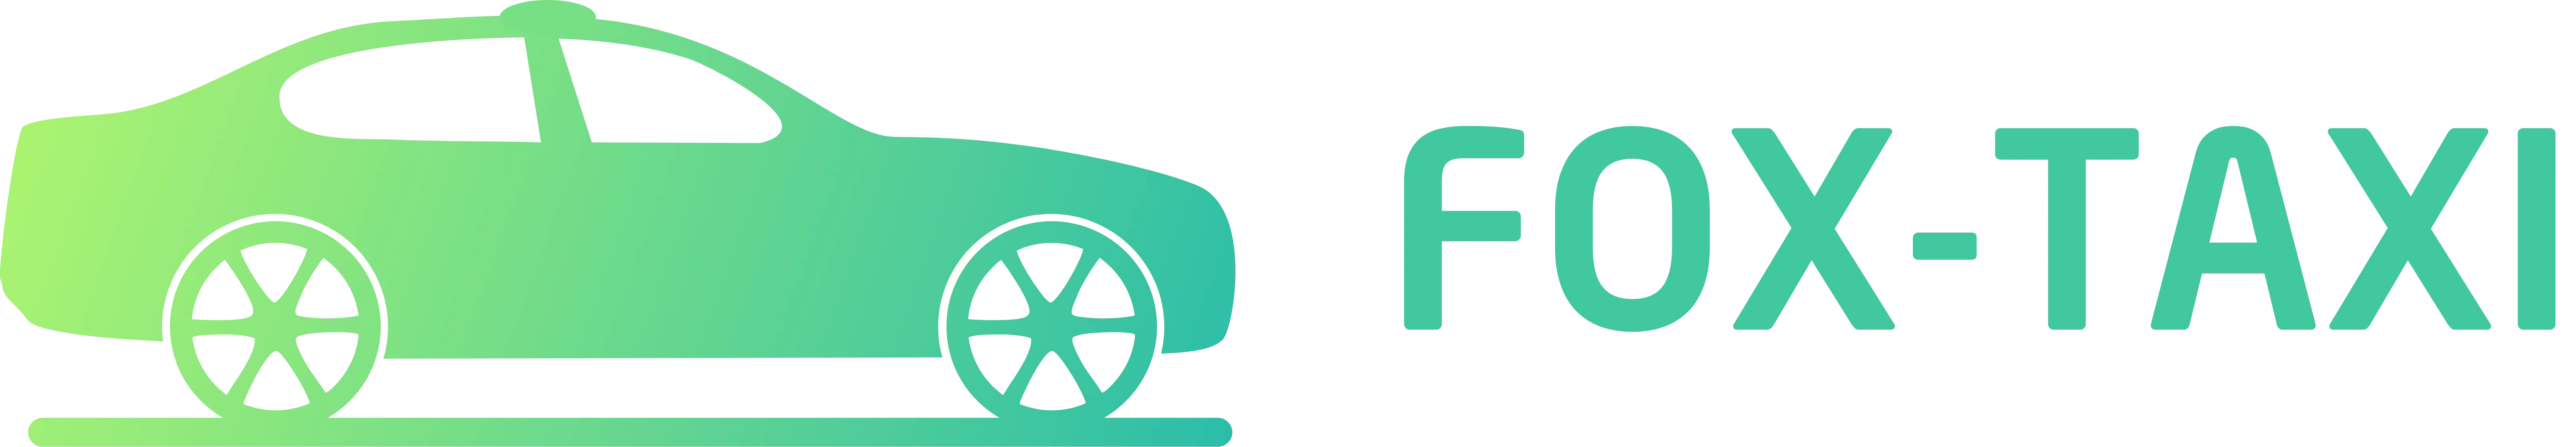 fox-taxi-logo